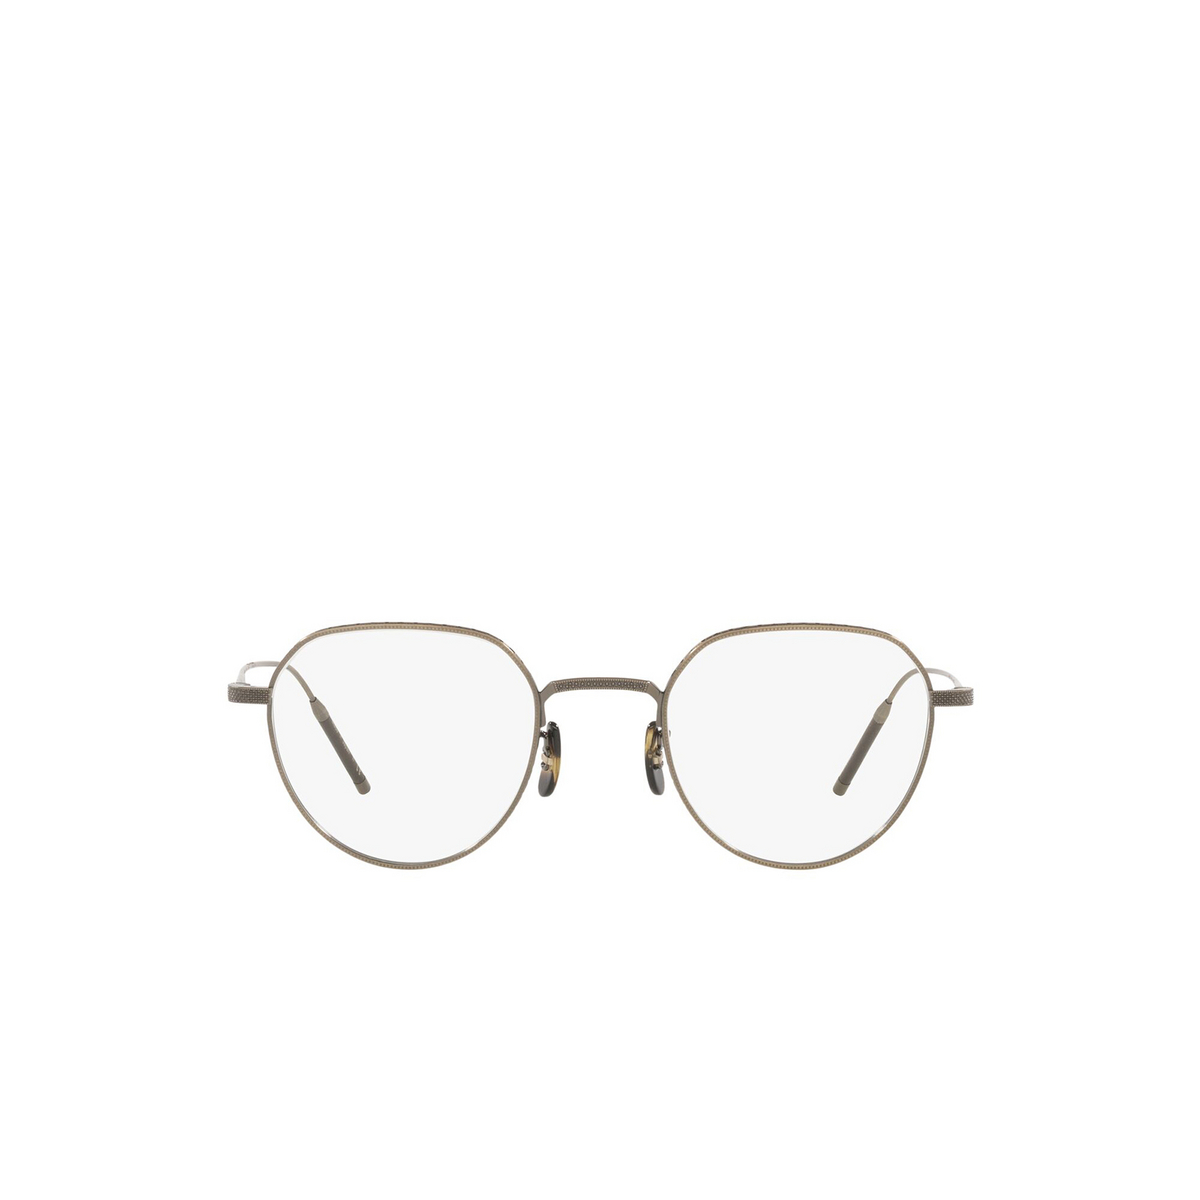 Oliver Peoples TK-4 Eyeglasses 5284 Antique Gold - front view